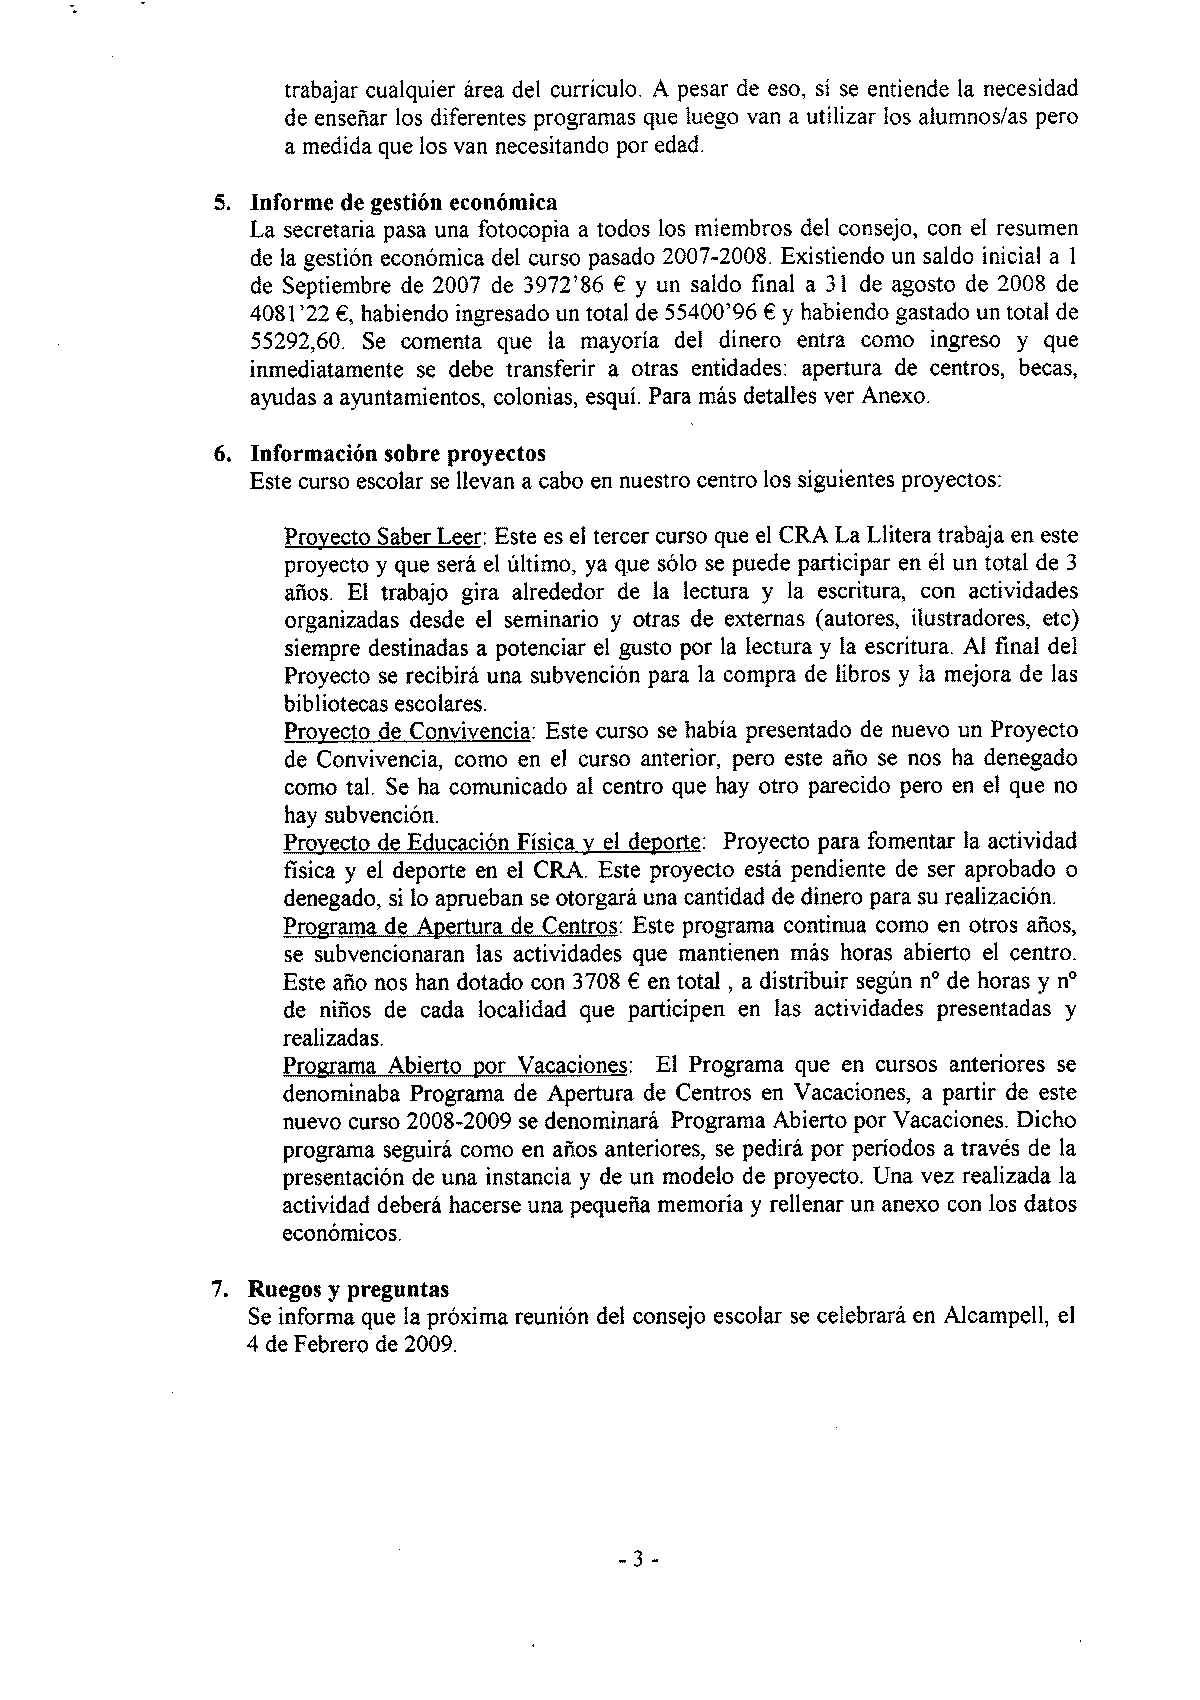 Consejo Escolar, 5 de noviembre de 2008 - acta (página 3)